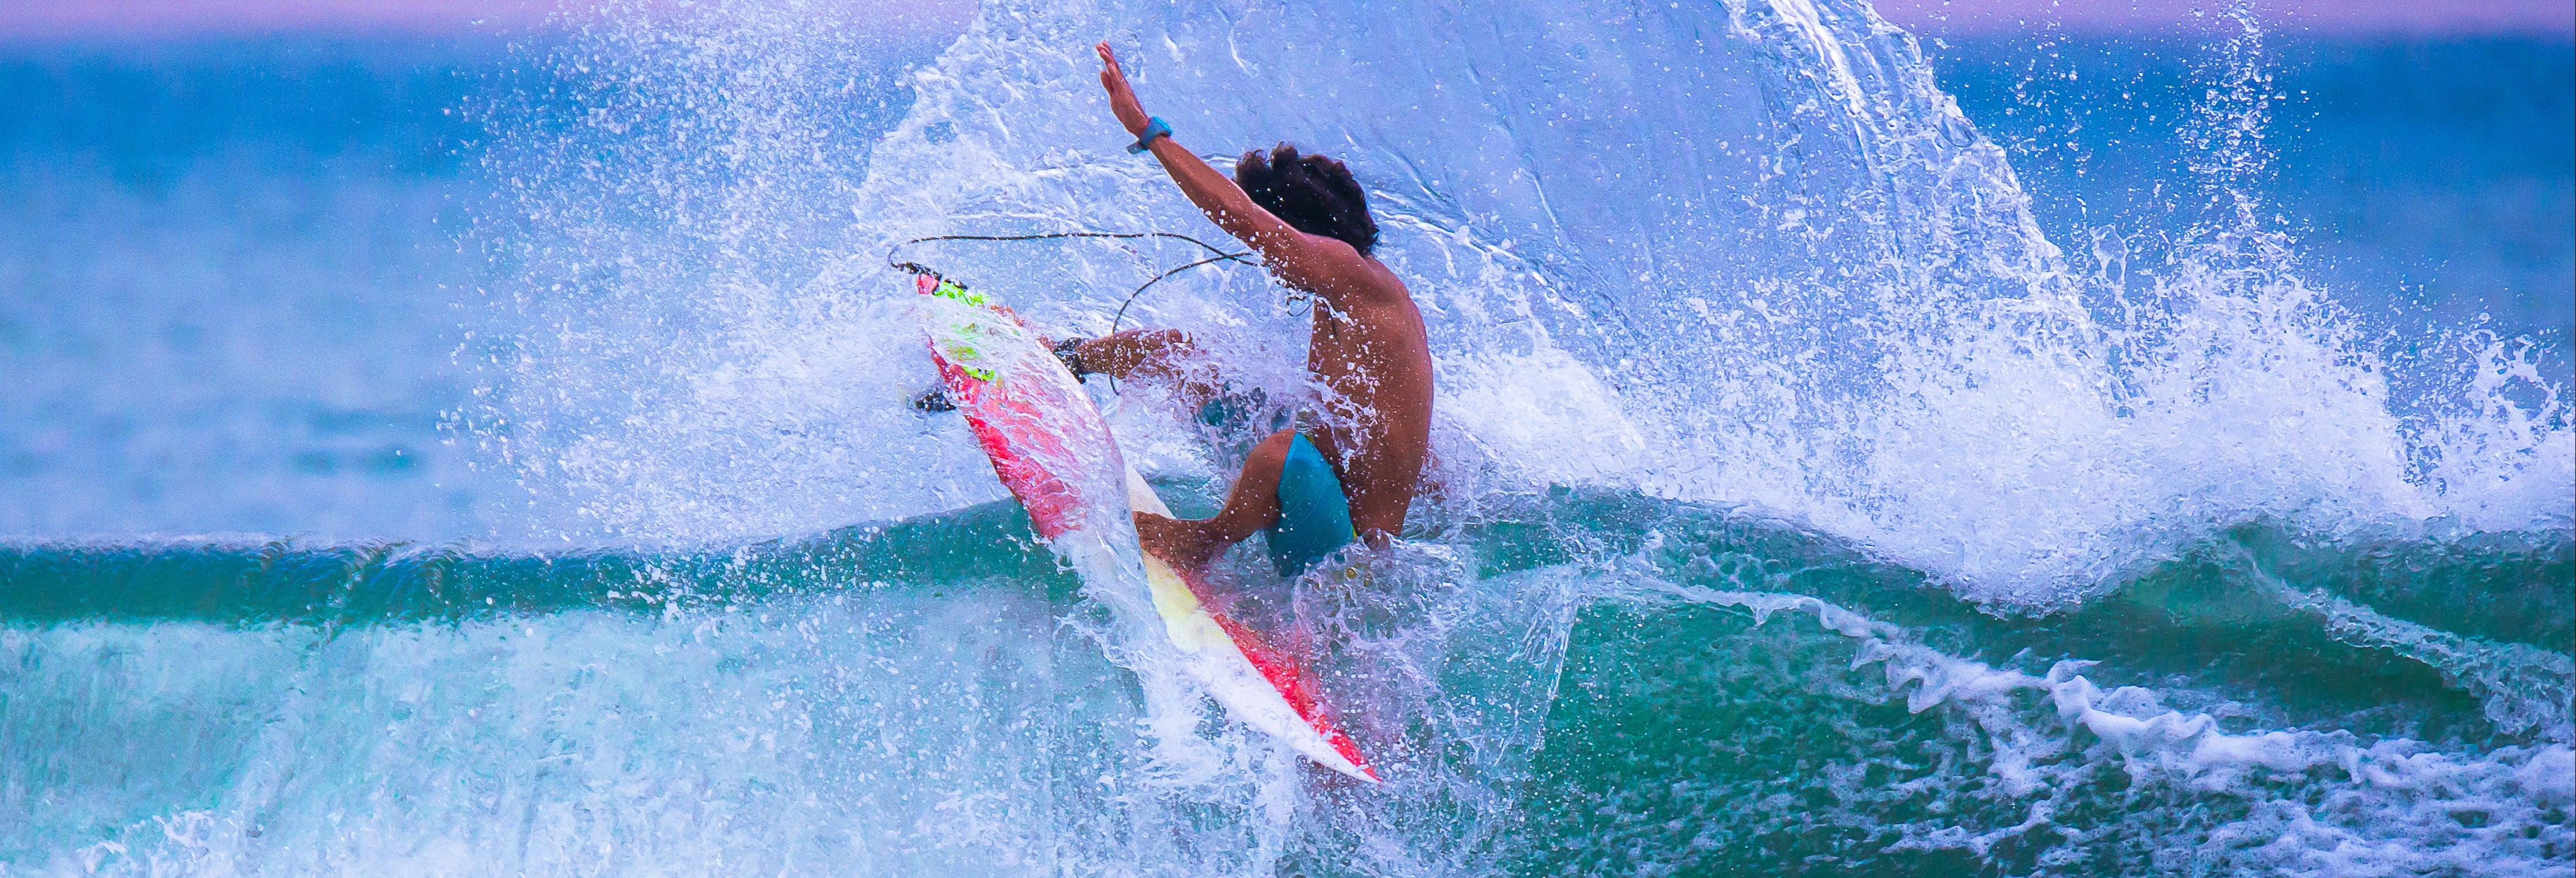 Curso de surfe em Jacó